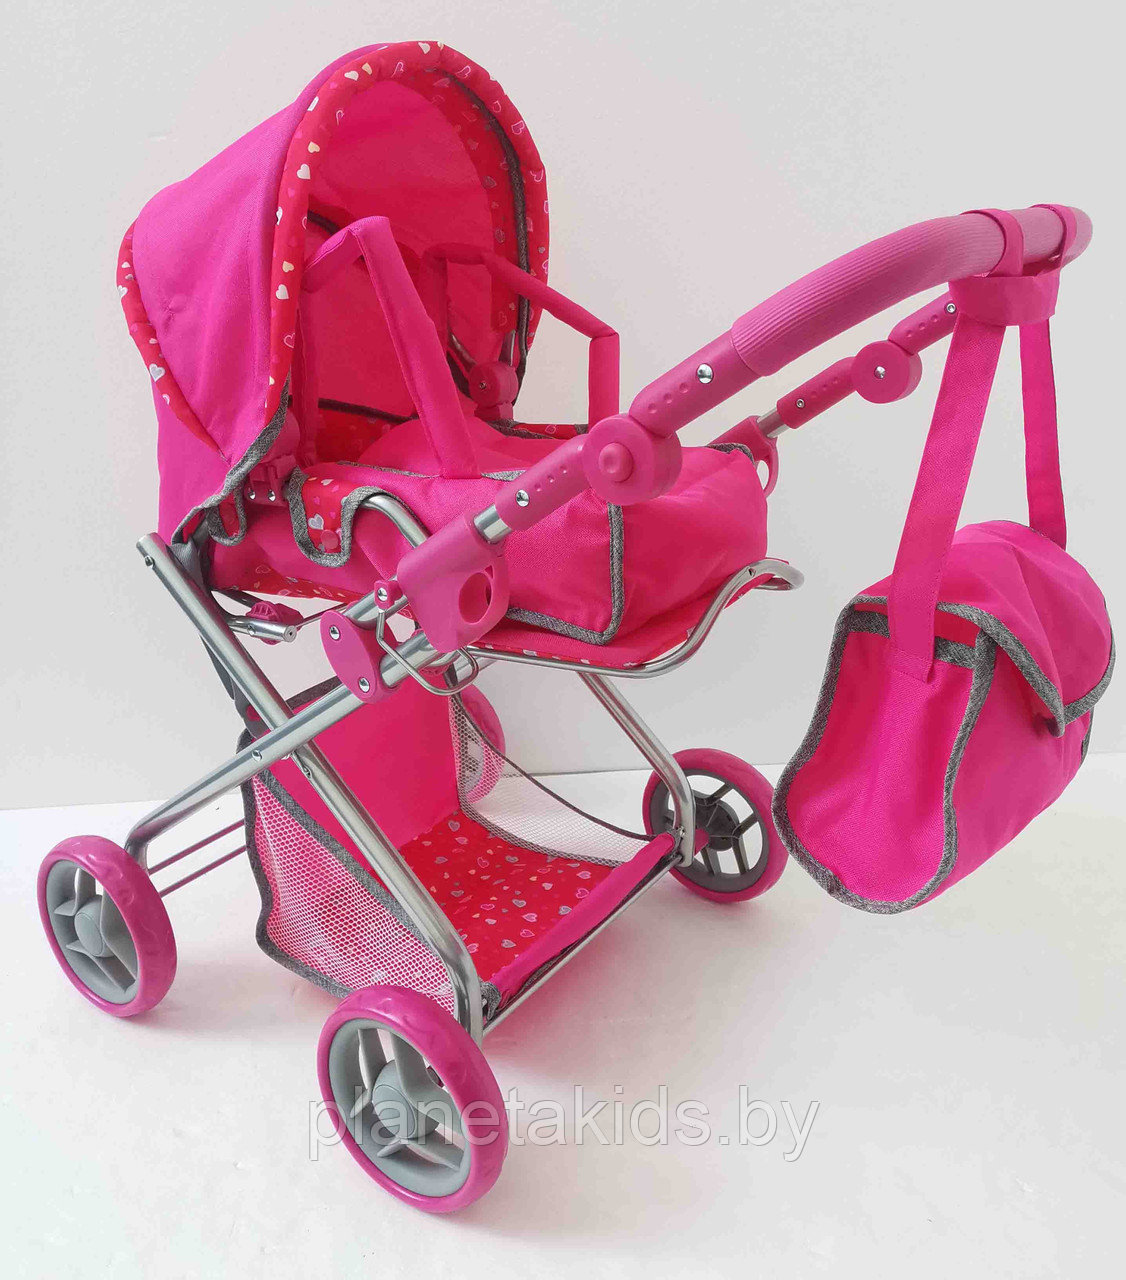 Детская игрушечная коляска для кукол Melogo арт. 9379 с регулируемой ручкой, люлькой